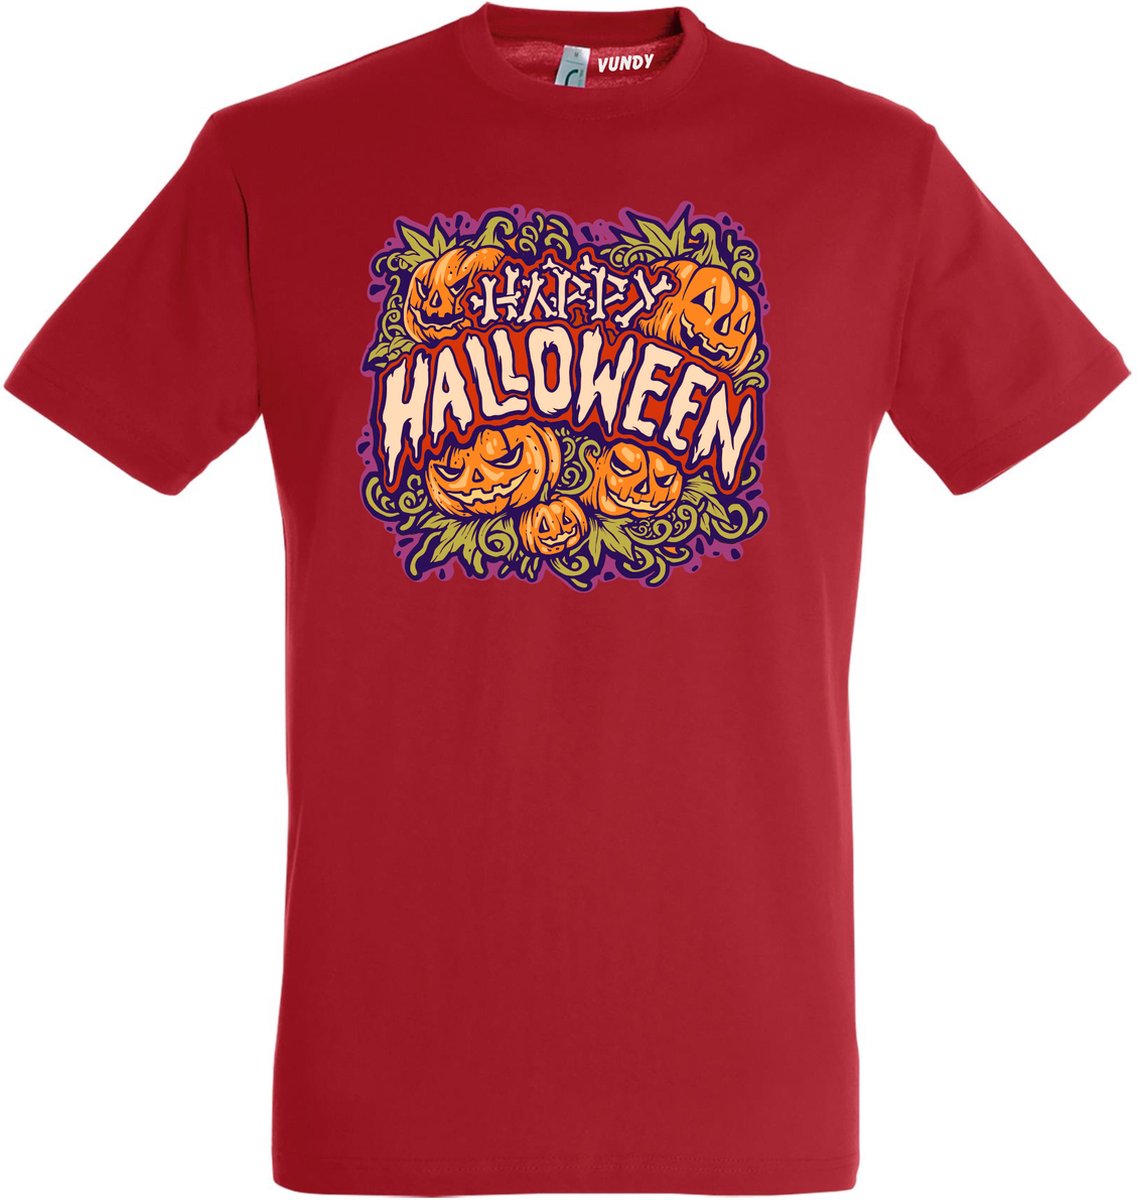 T-shirt Happy Halloween pompoen | Halloween kostuum kind dames heren | verkleedkleren meisje jongen | Rood | maat S